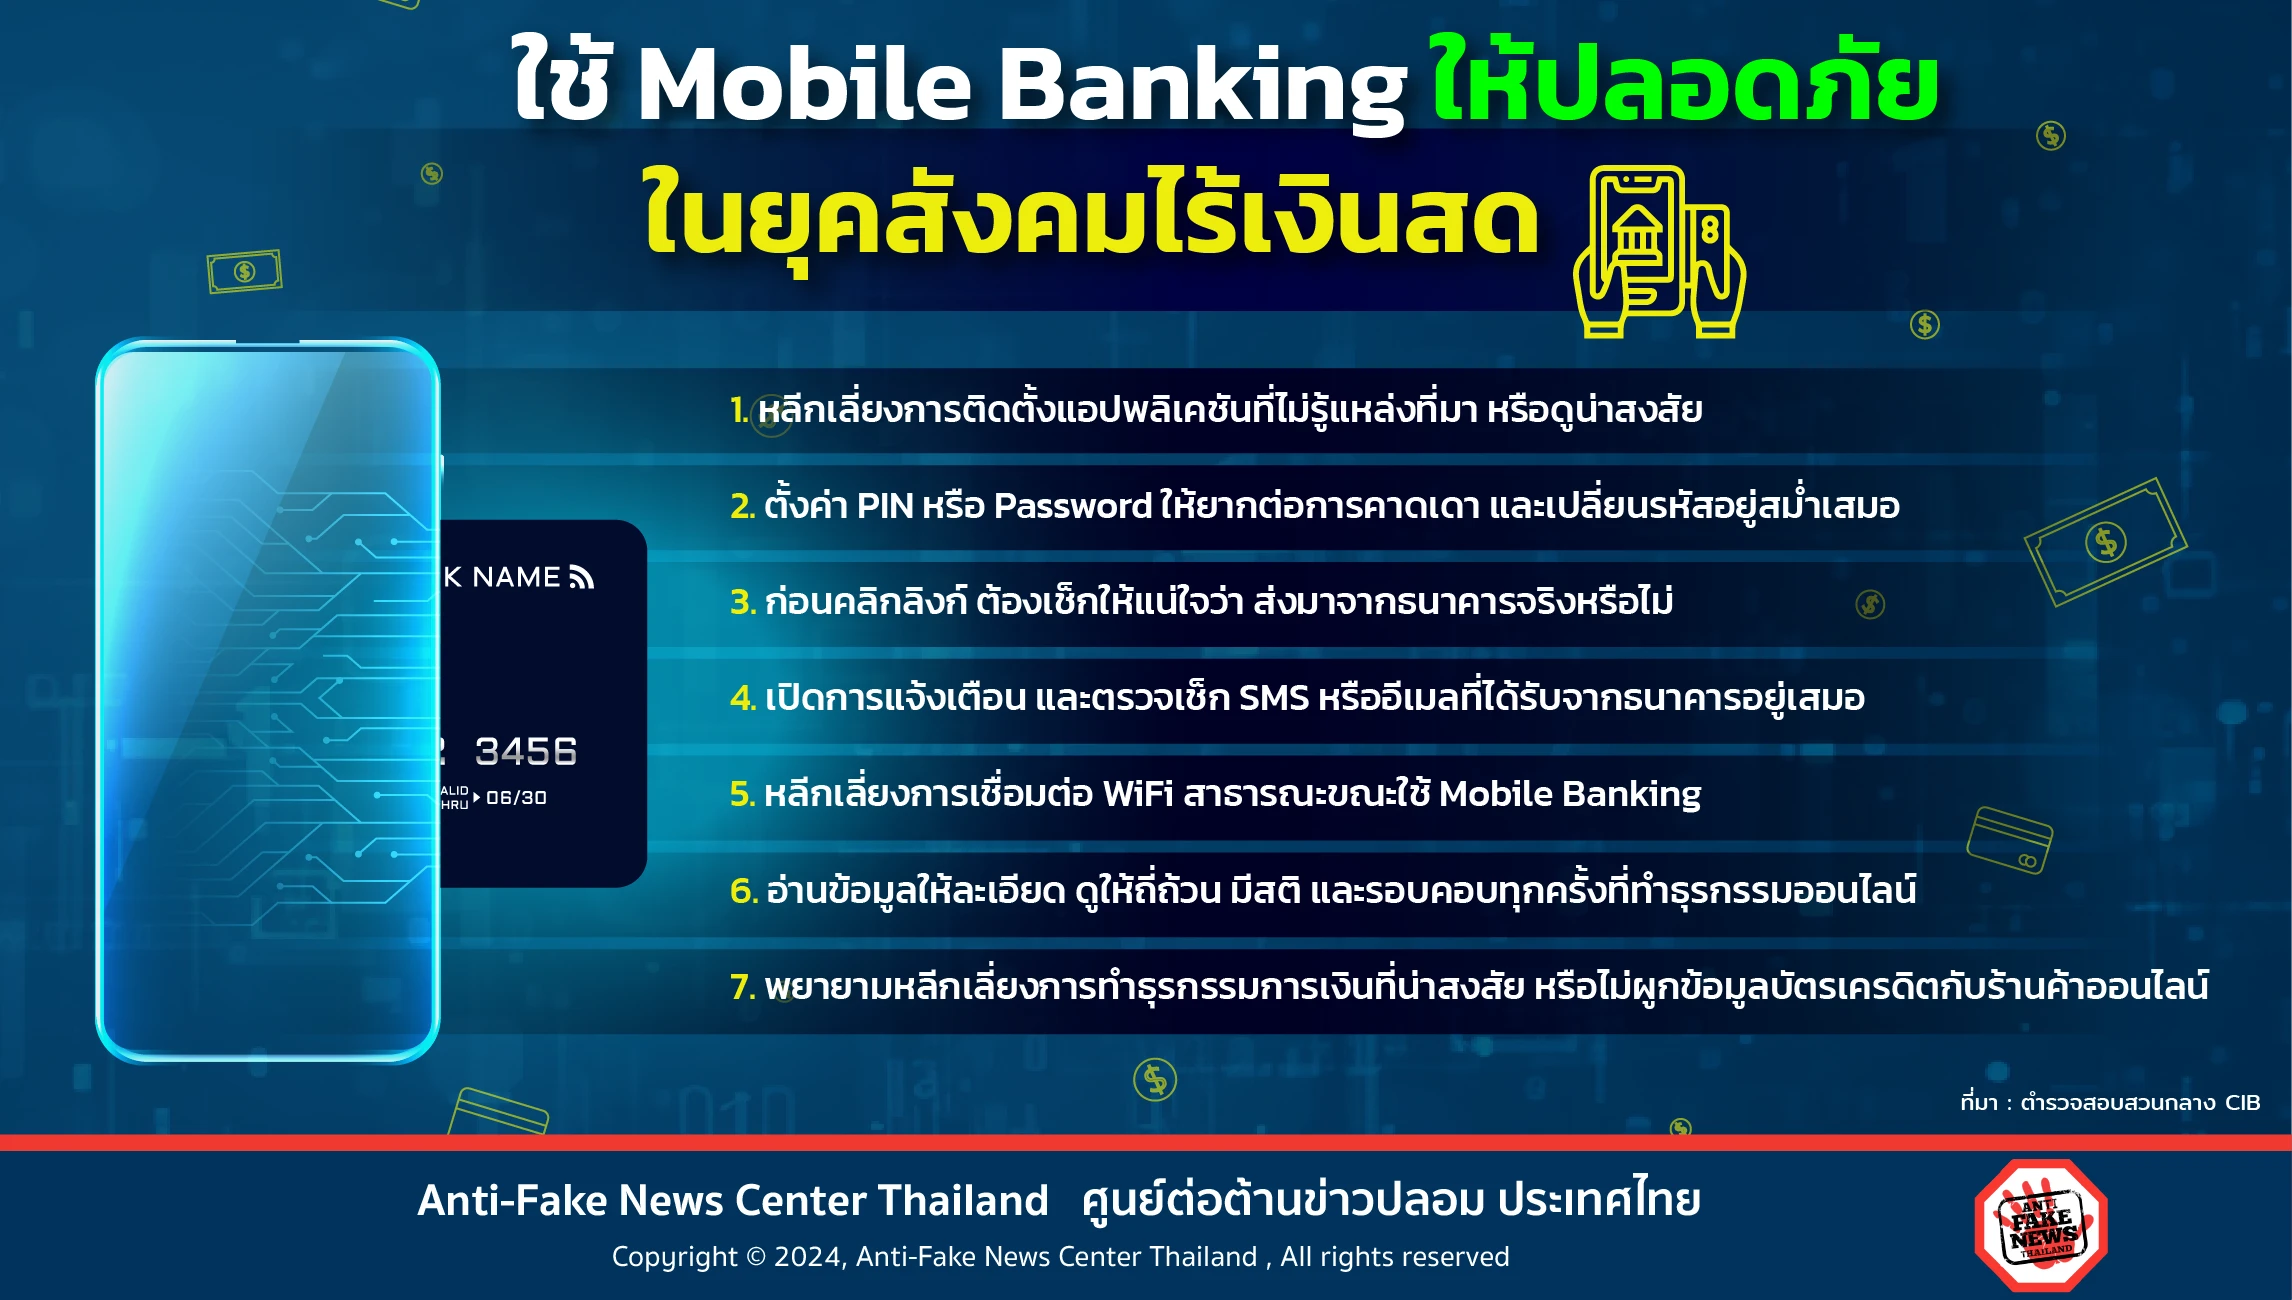 ใช้ Mobile Banking ให้ปลอดภัย ในยุคสังคมไร้เงินสด